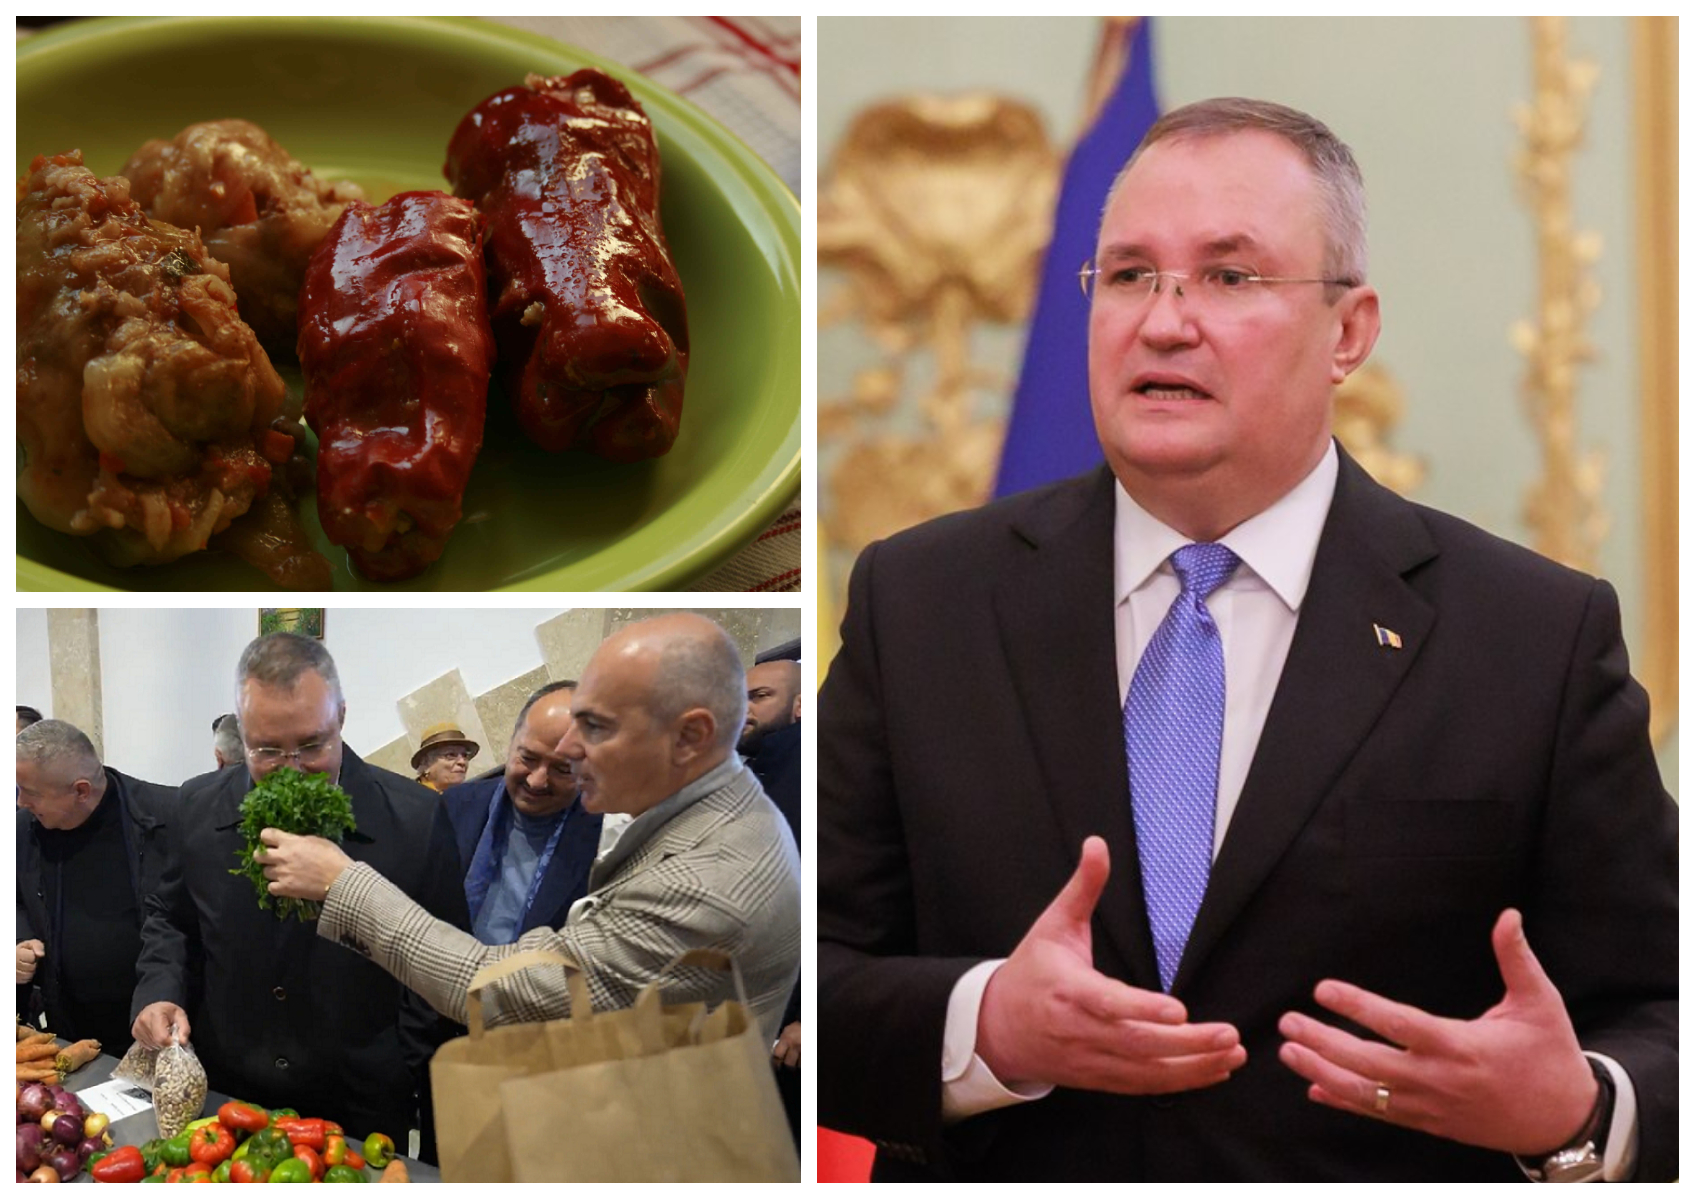 Chiar și generalul politician Nicolae Ciucă face sarmale, ”de calibru”! Secretele rețetei sale autentic oltenească: ”Sunt ușor picanți și dau un gust aparte”